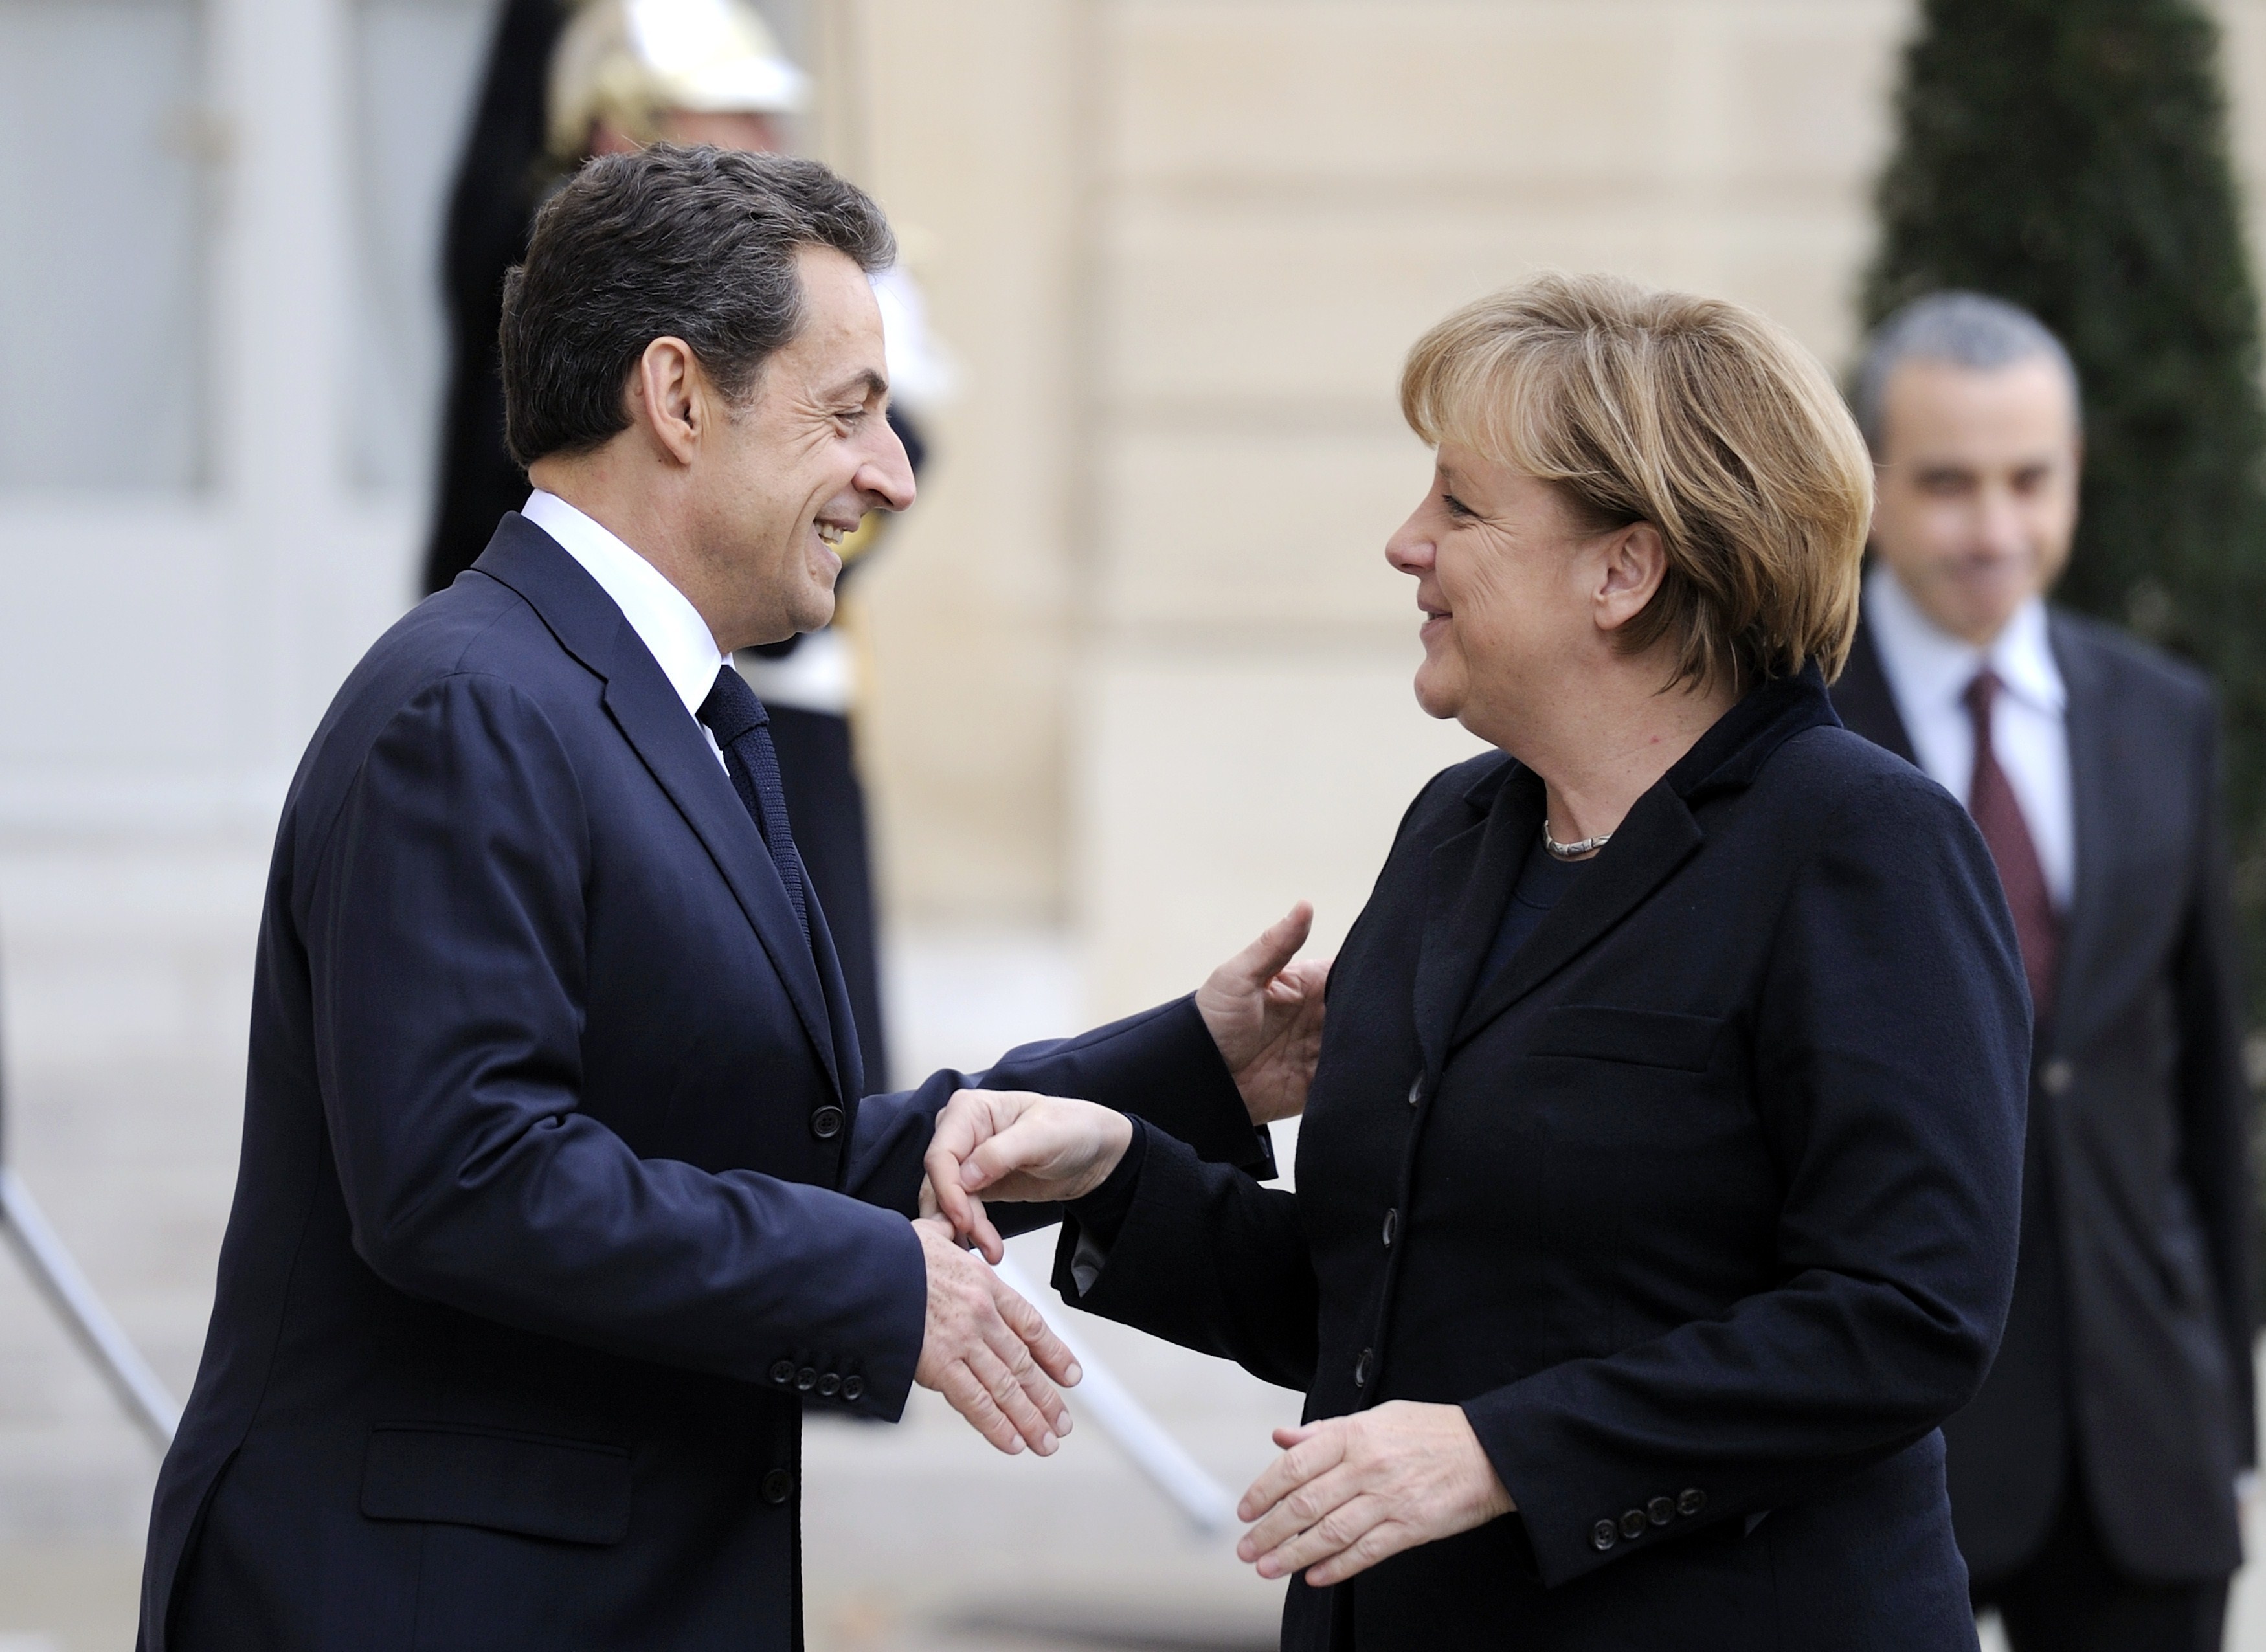 Declaraţiile făcute de Merkel şi Sarkozy după întâlnirea de astăzi